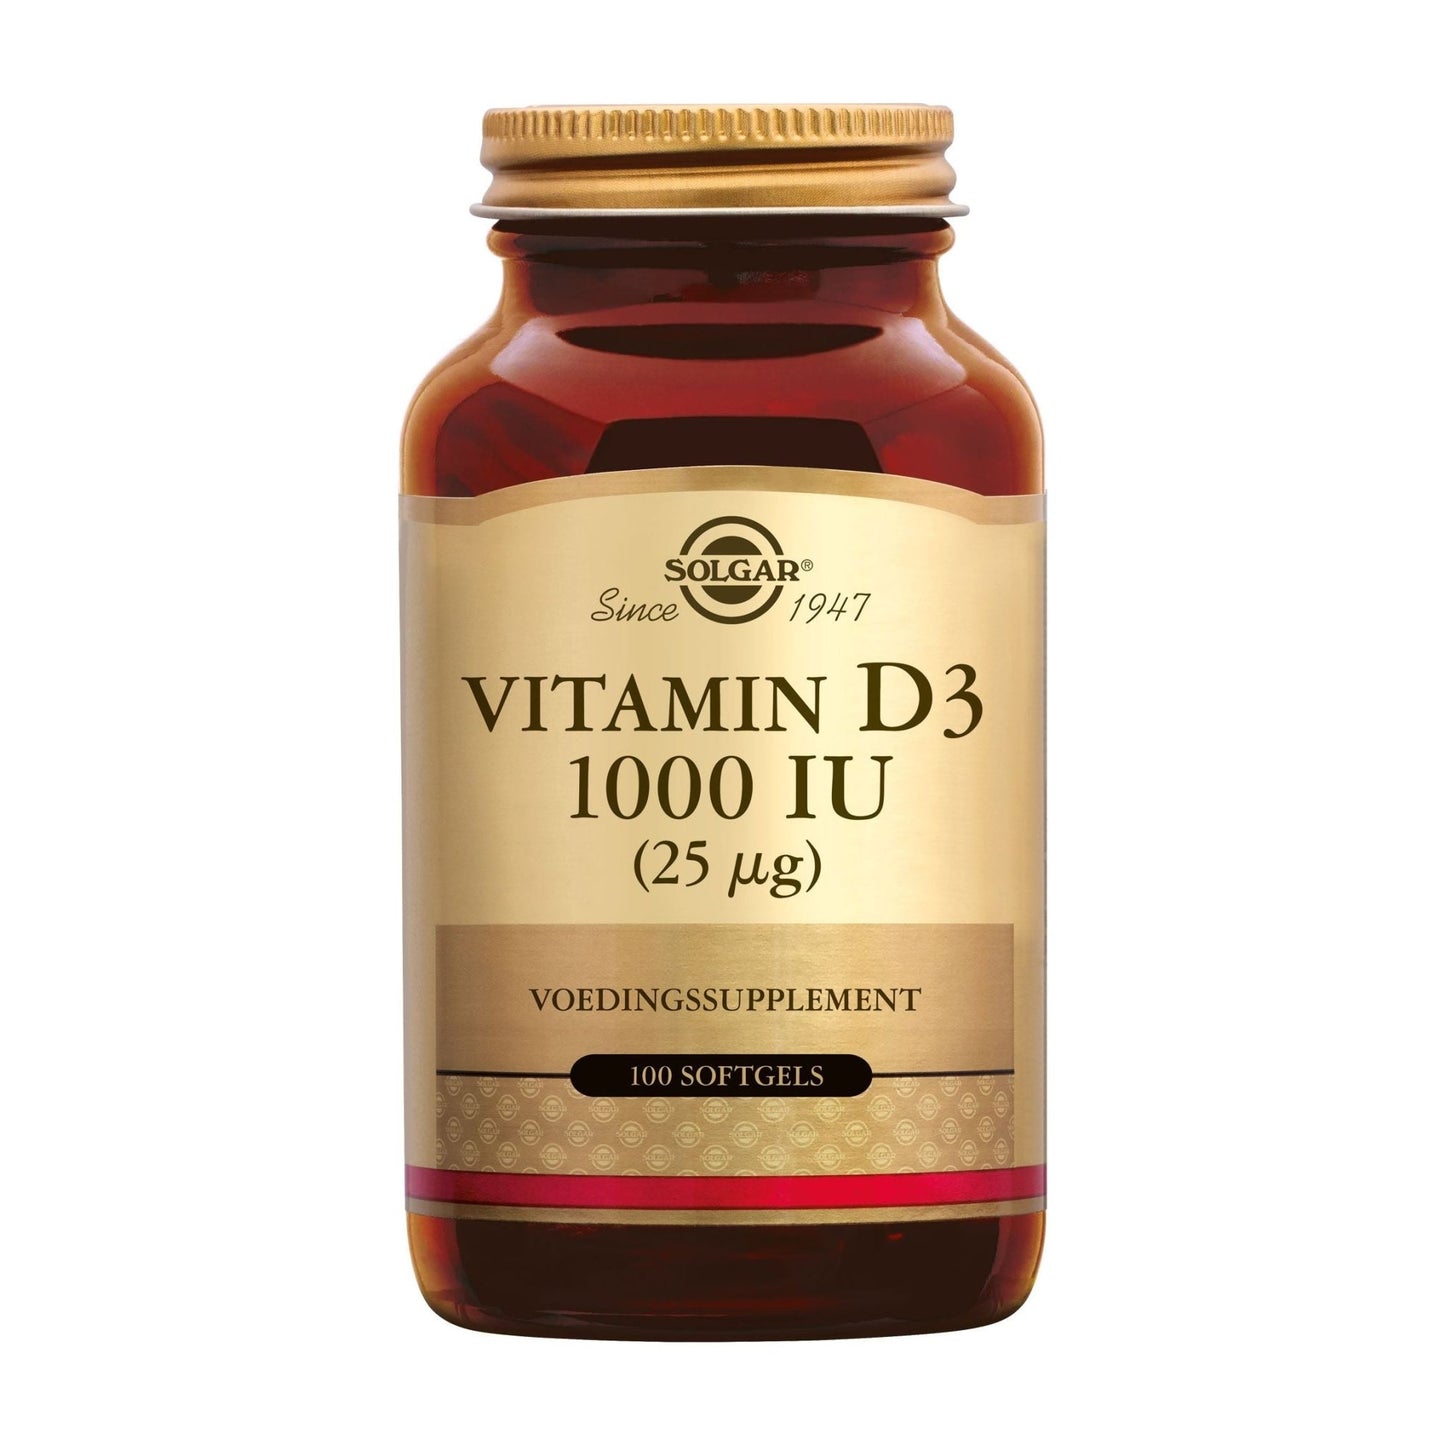 Vitamine D-3 1000 IU softgels Supplement Solgar   